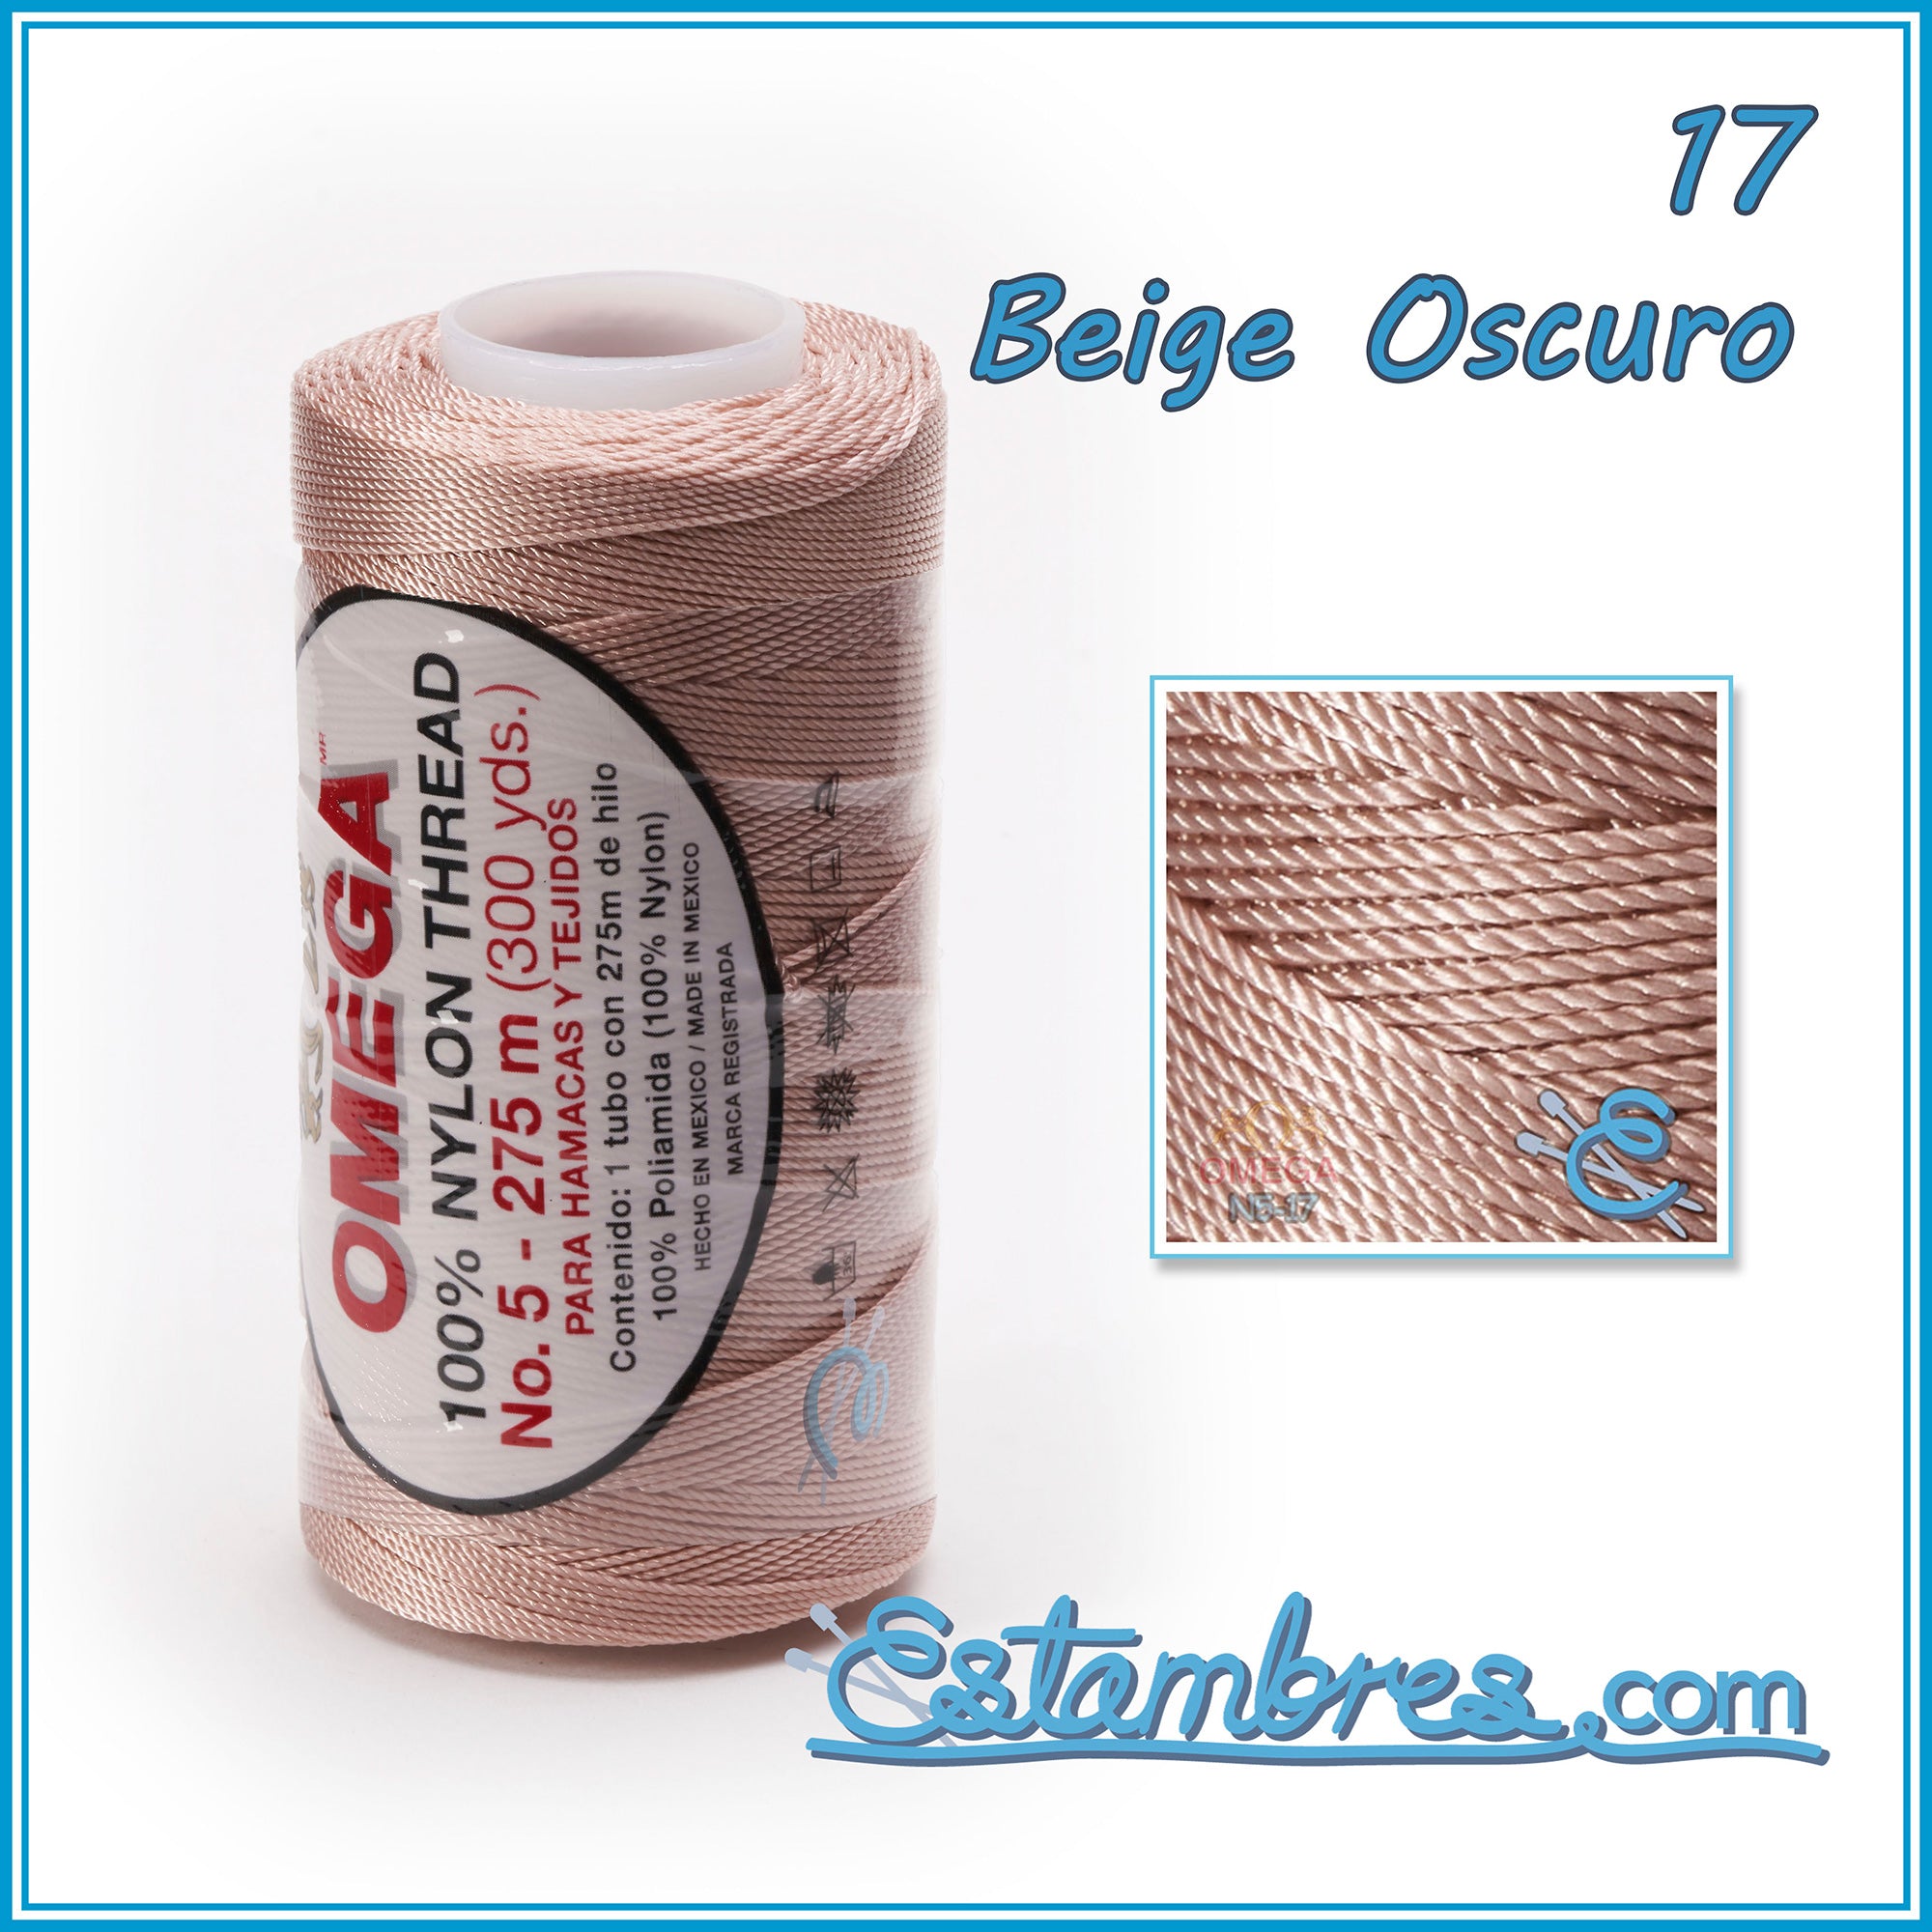 Sedería Don Chicho - Hilo Crochet Omega N° 5 para tejer con